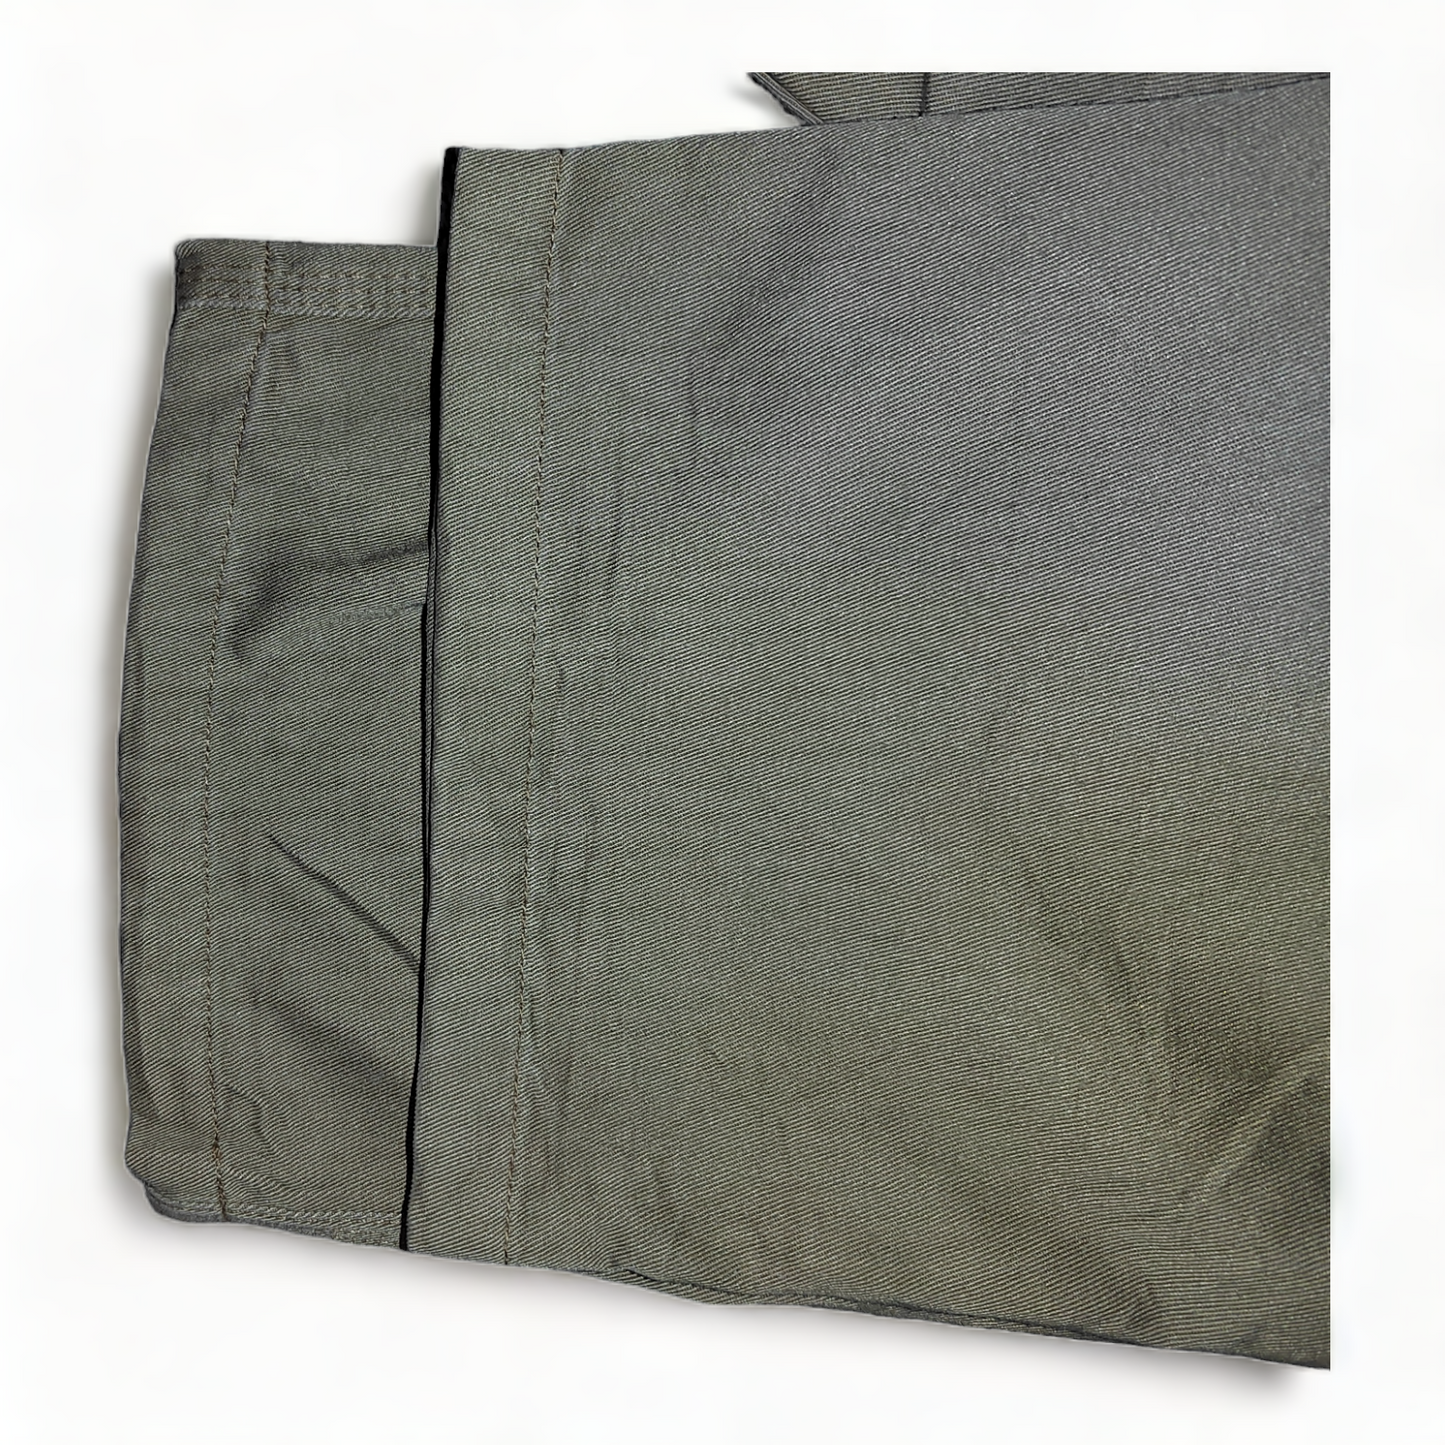 Dickies Carpenter Trousers Mens W34 Tan – 34 x 29